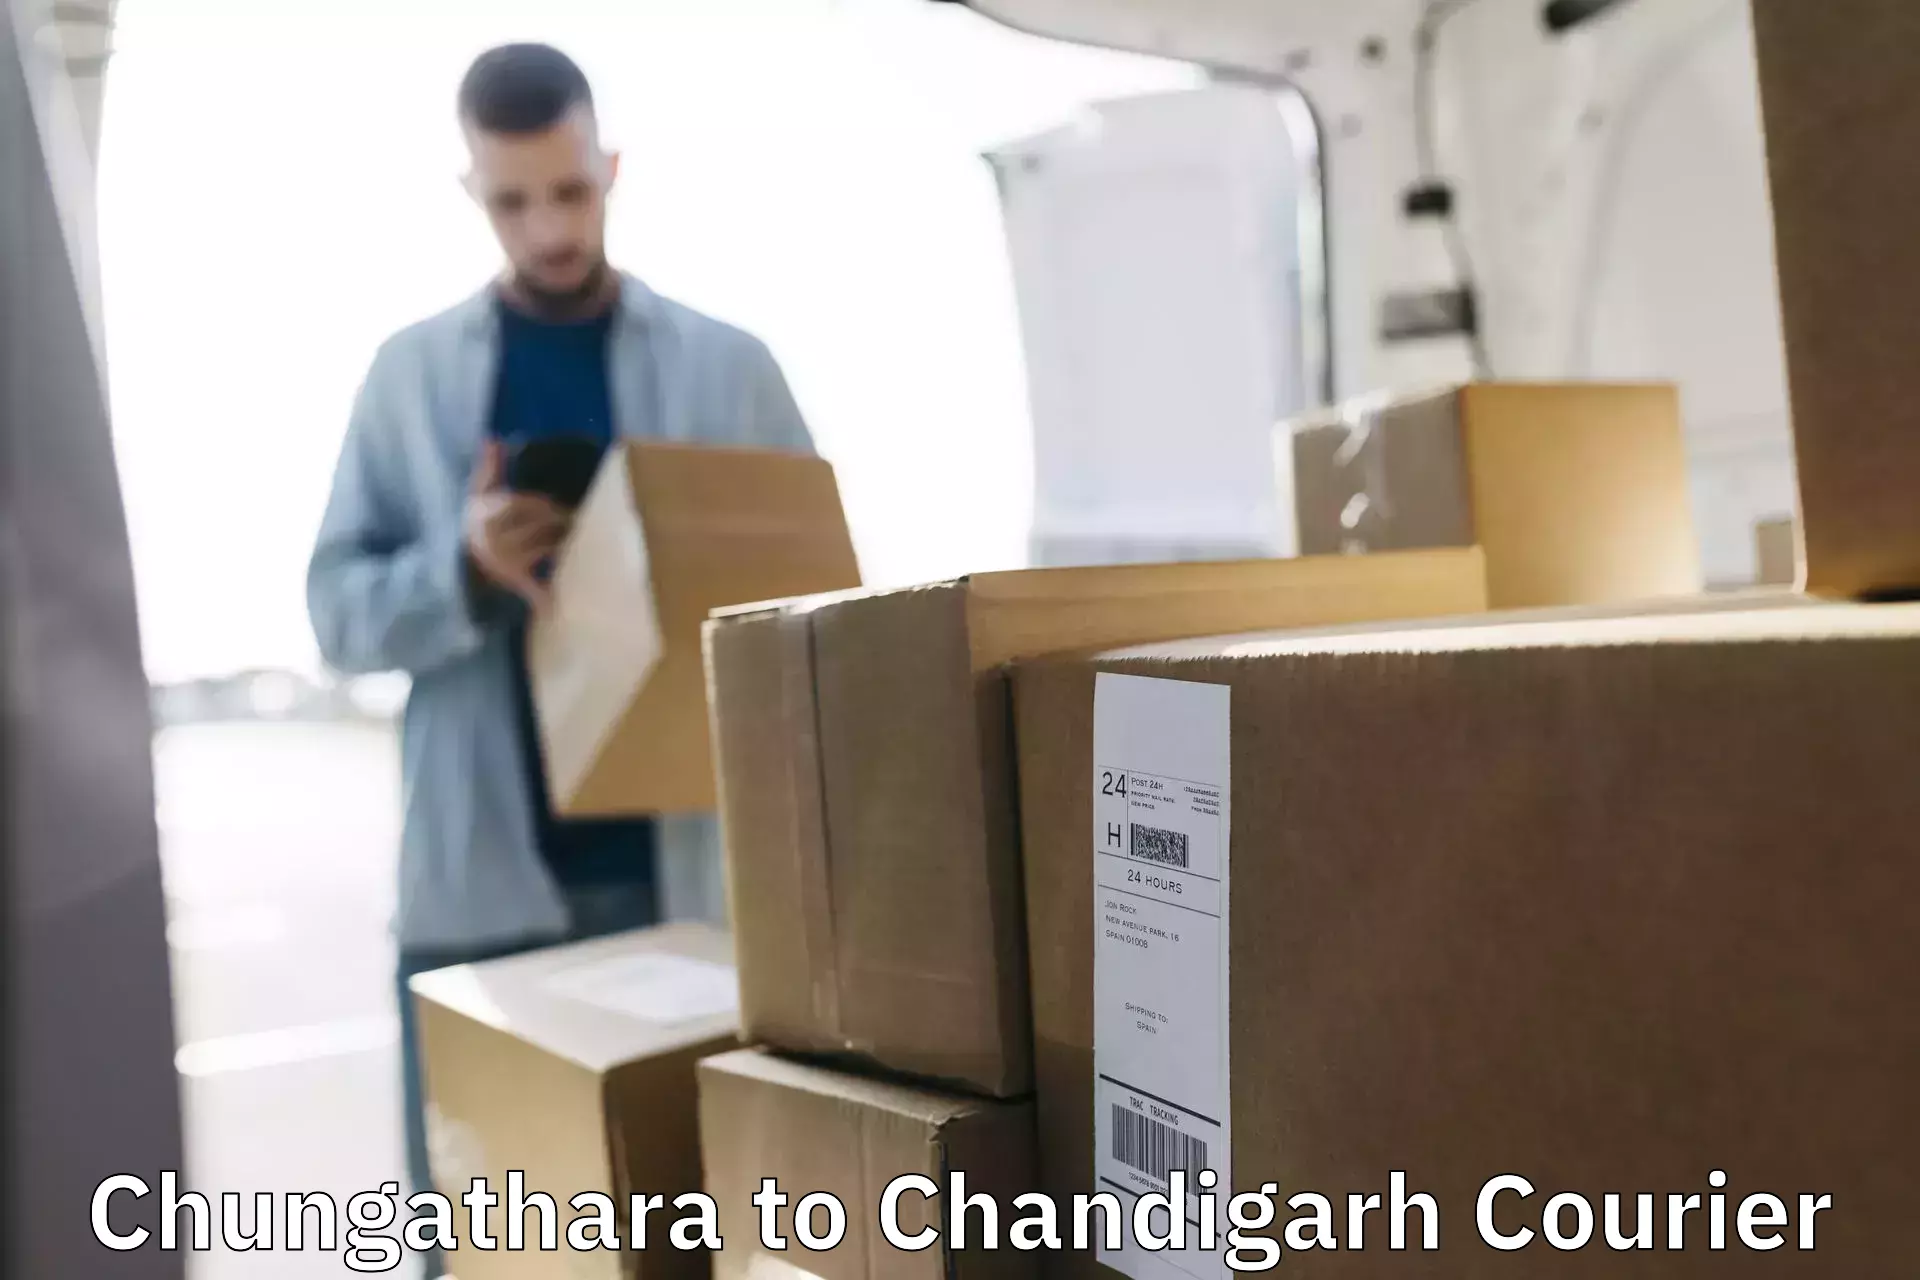 Bulk shipment Chungathara to Chandigarh